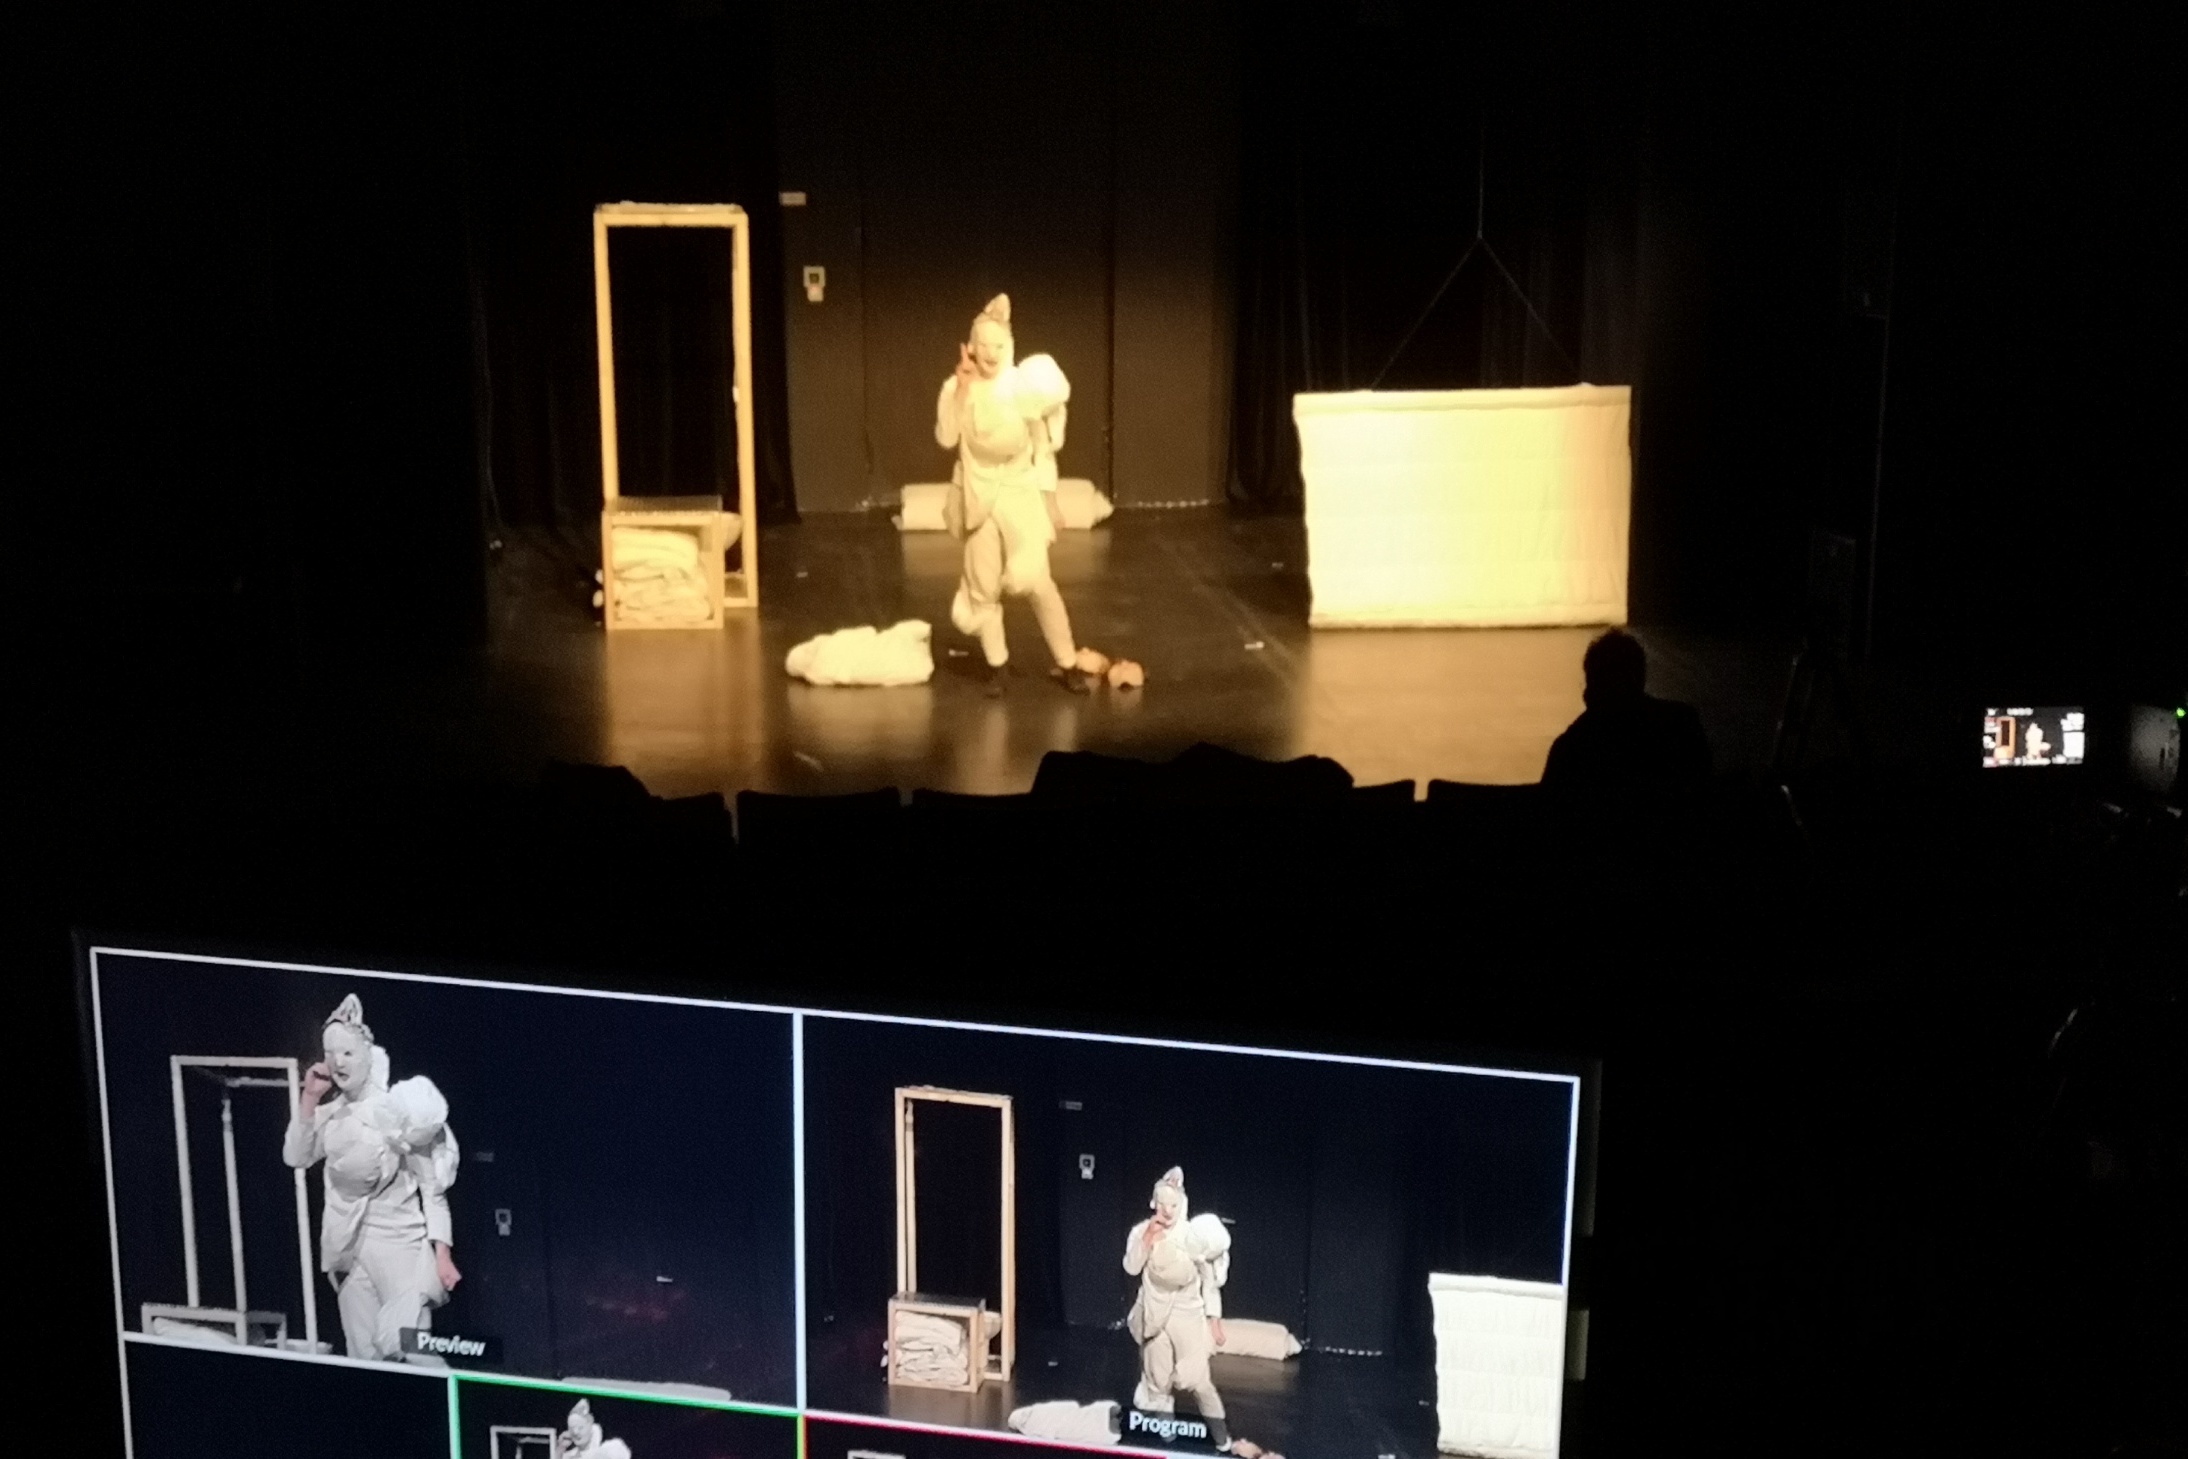 Bildschirm mit verschiednenen Frames, die das zeigen, was weiter hinten auf der Bühne zu sehen ist: Eine Figur in weißem Kostüm, daneben zwei eckige Gegenstände auf der Bühne.